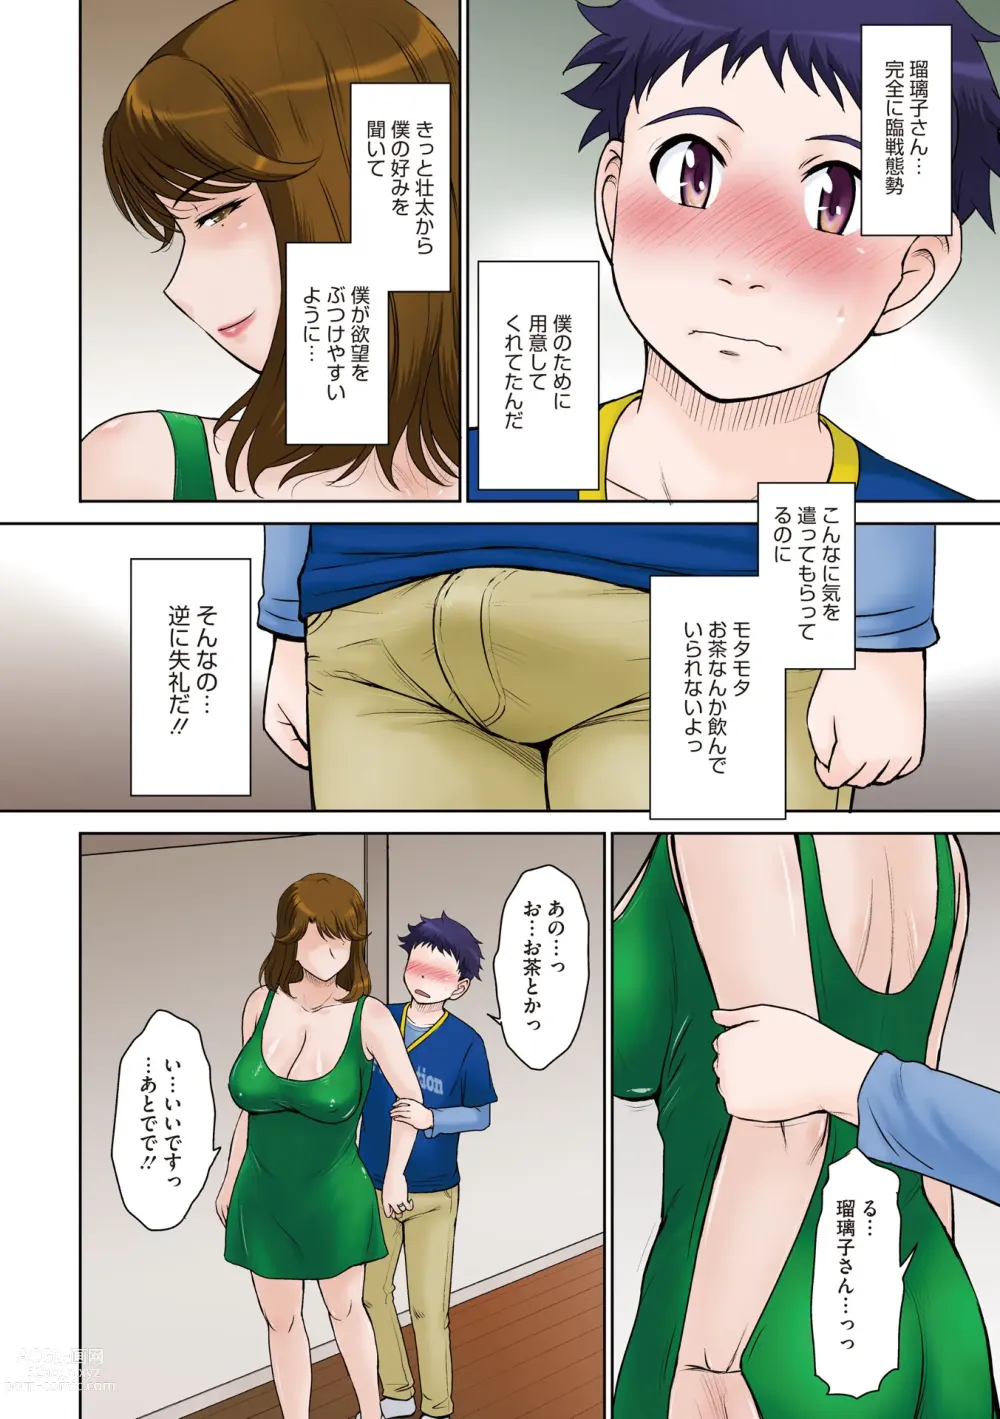 Page 8 of manga Kanjyuku. Eromental